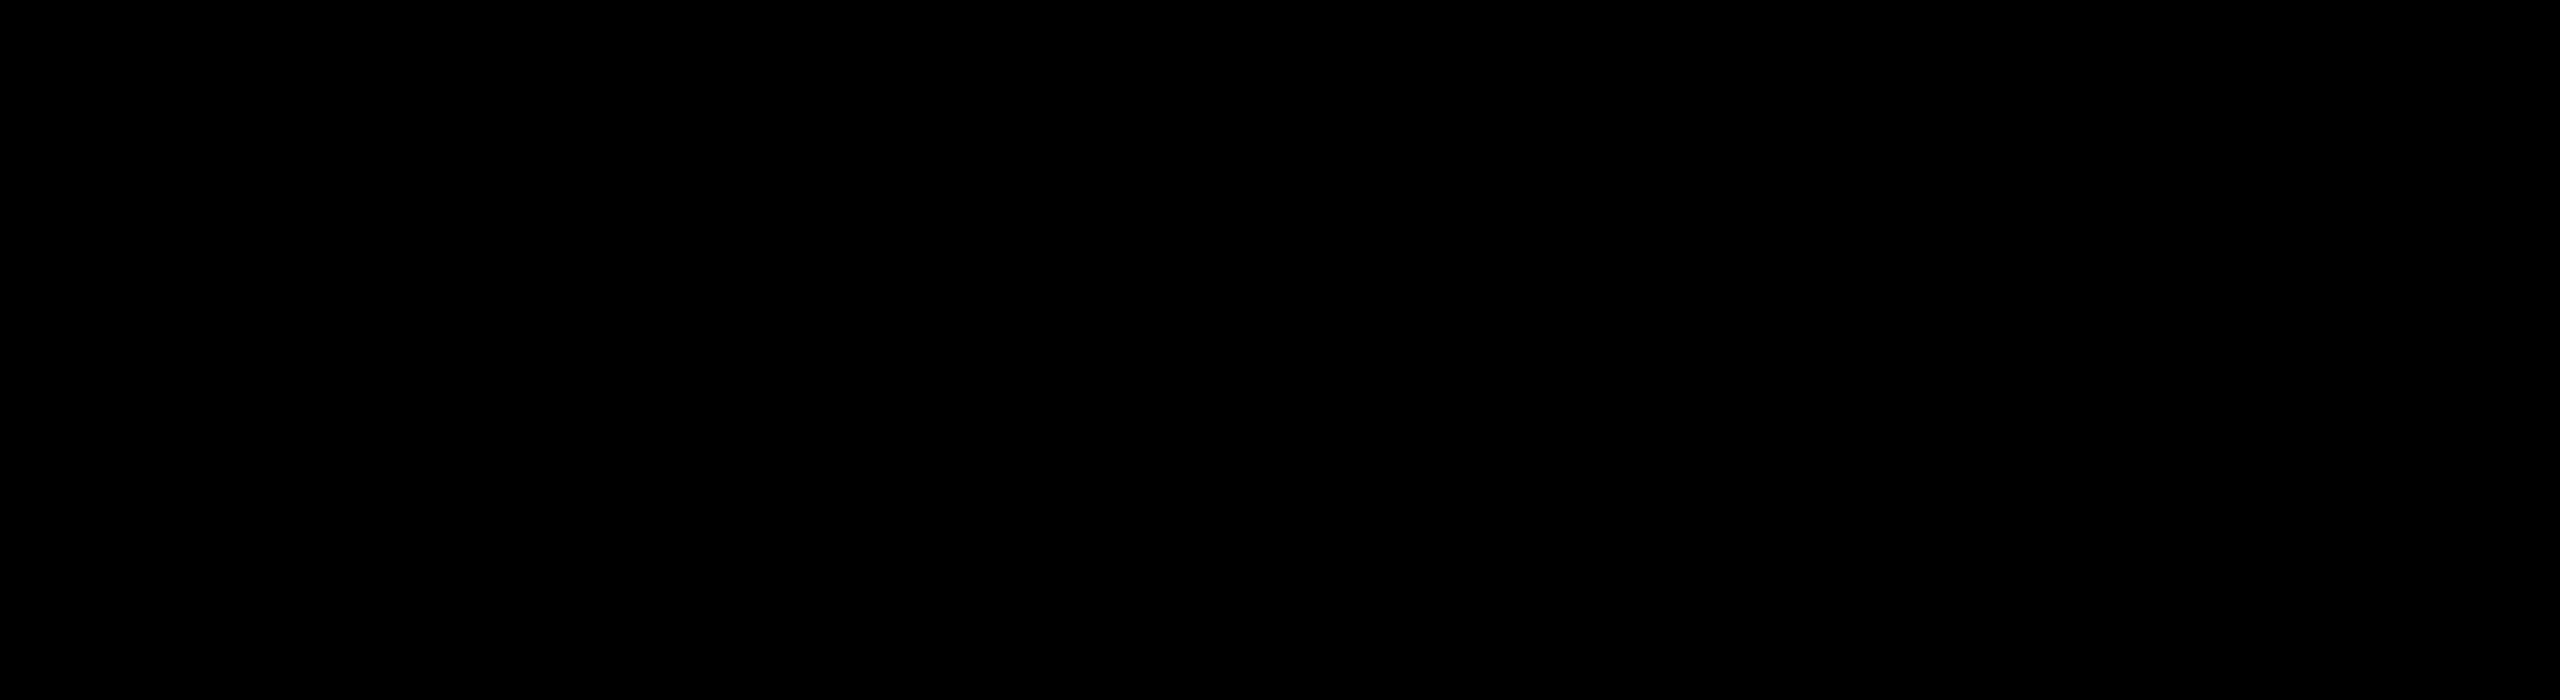 Develey Hintergrund Grillsoße BBQ: schwarz